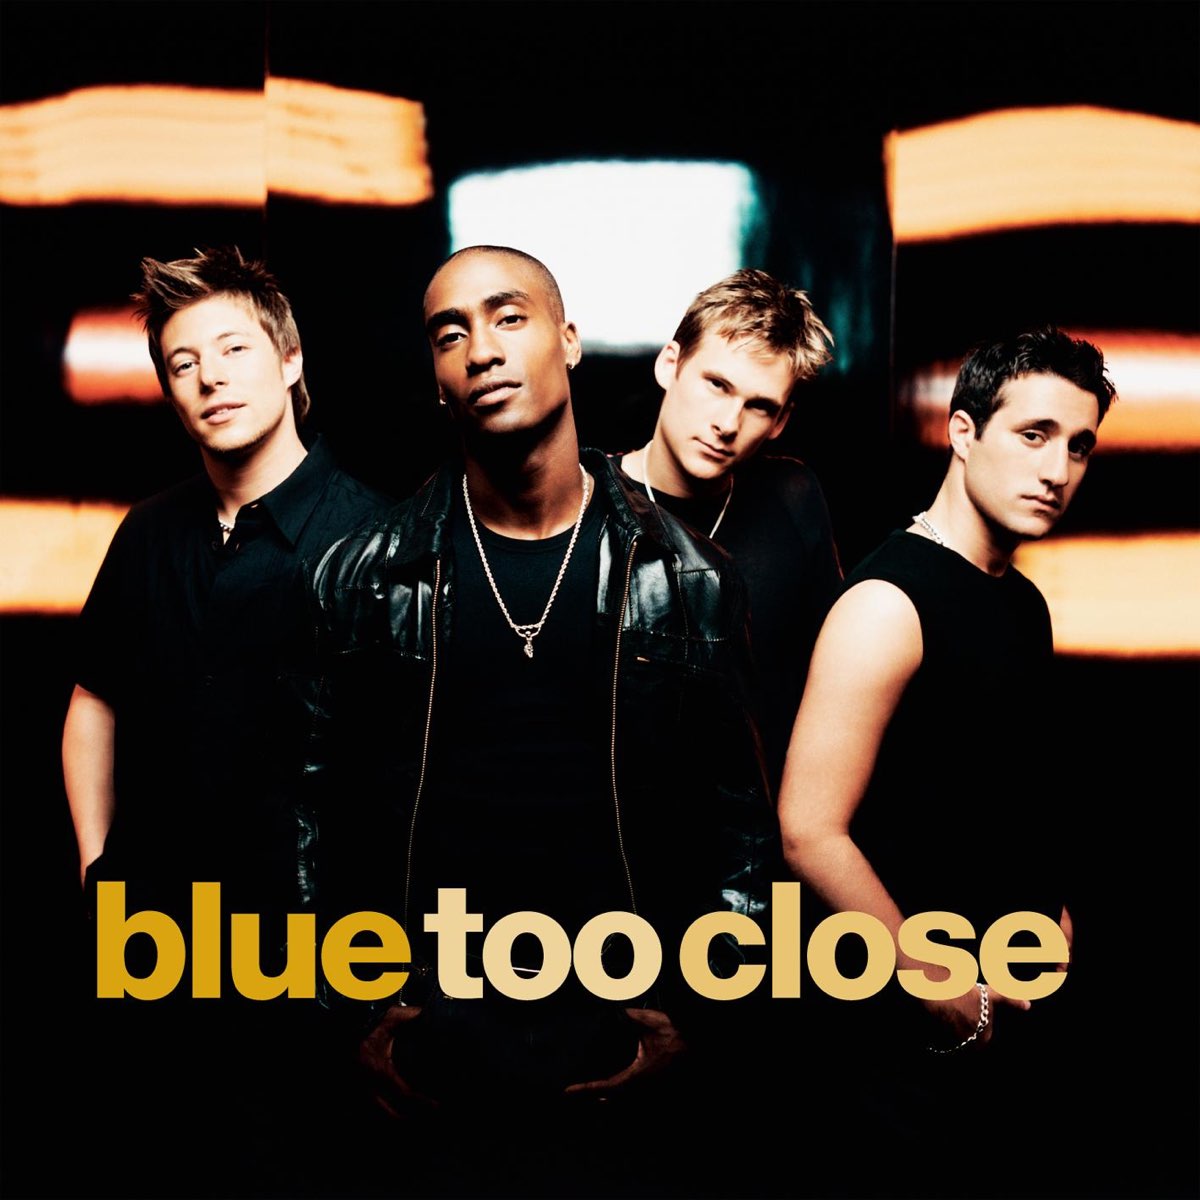 Blue too close. Альбом Блу. Too close слова.